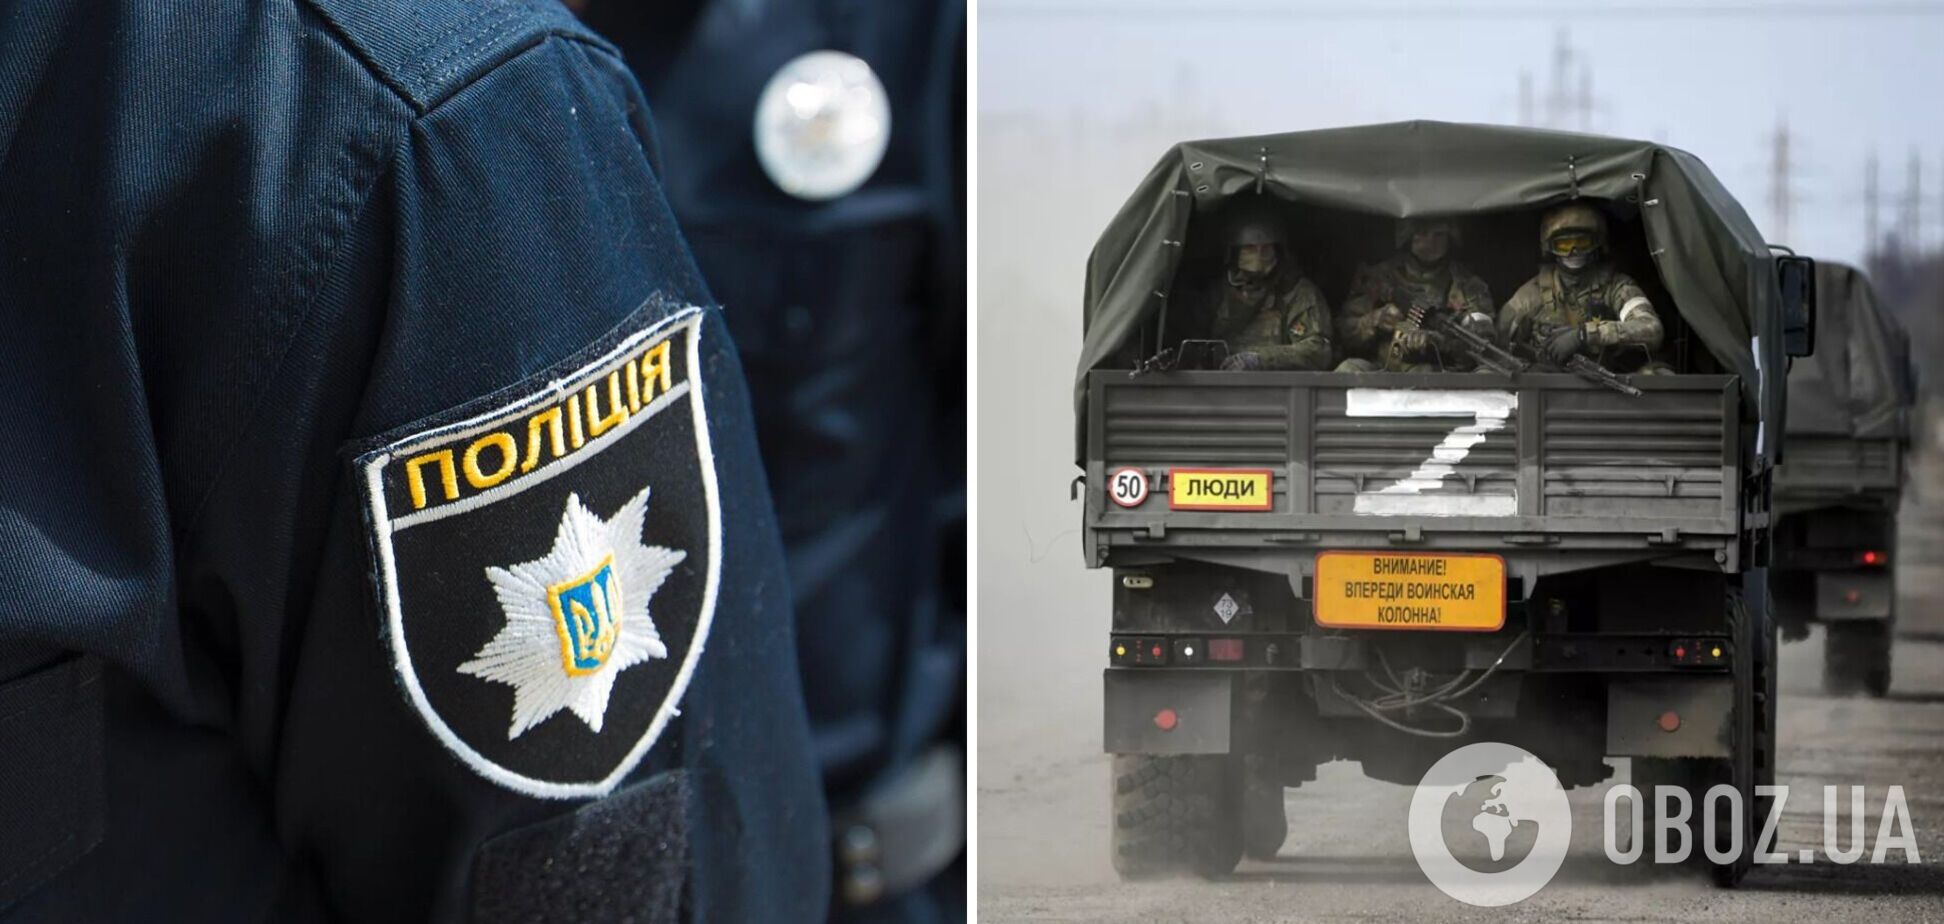 Около 400 украинских полицейских работают на РФ после оккупации: им сообщили о подозрении